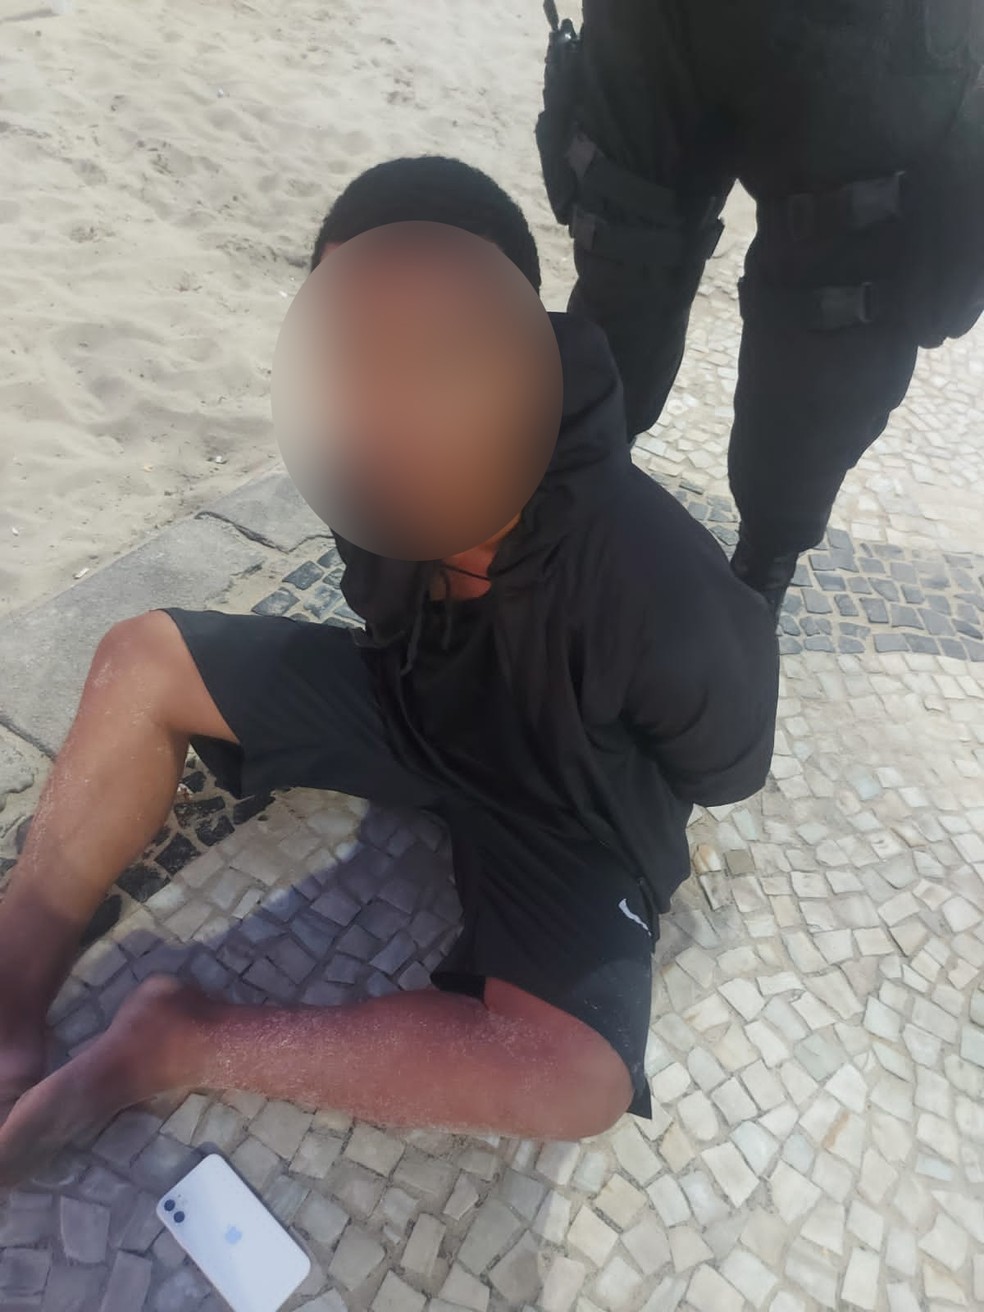 Dois menores de idade foram detidos e encaminhados para a 12ªDP (Copacabana) após roubarem e agredirem duas turistas na praia de Copacabana — Foto: Reprodução